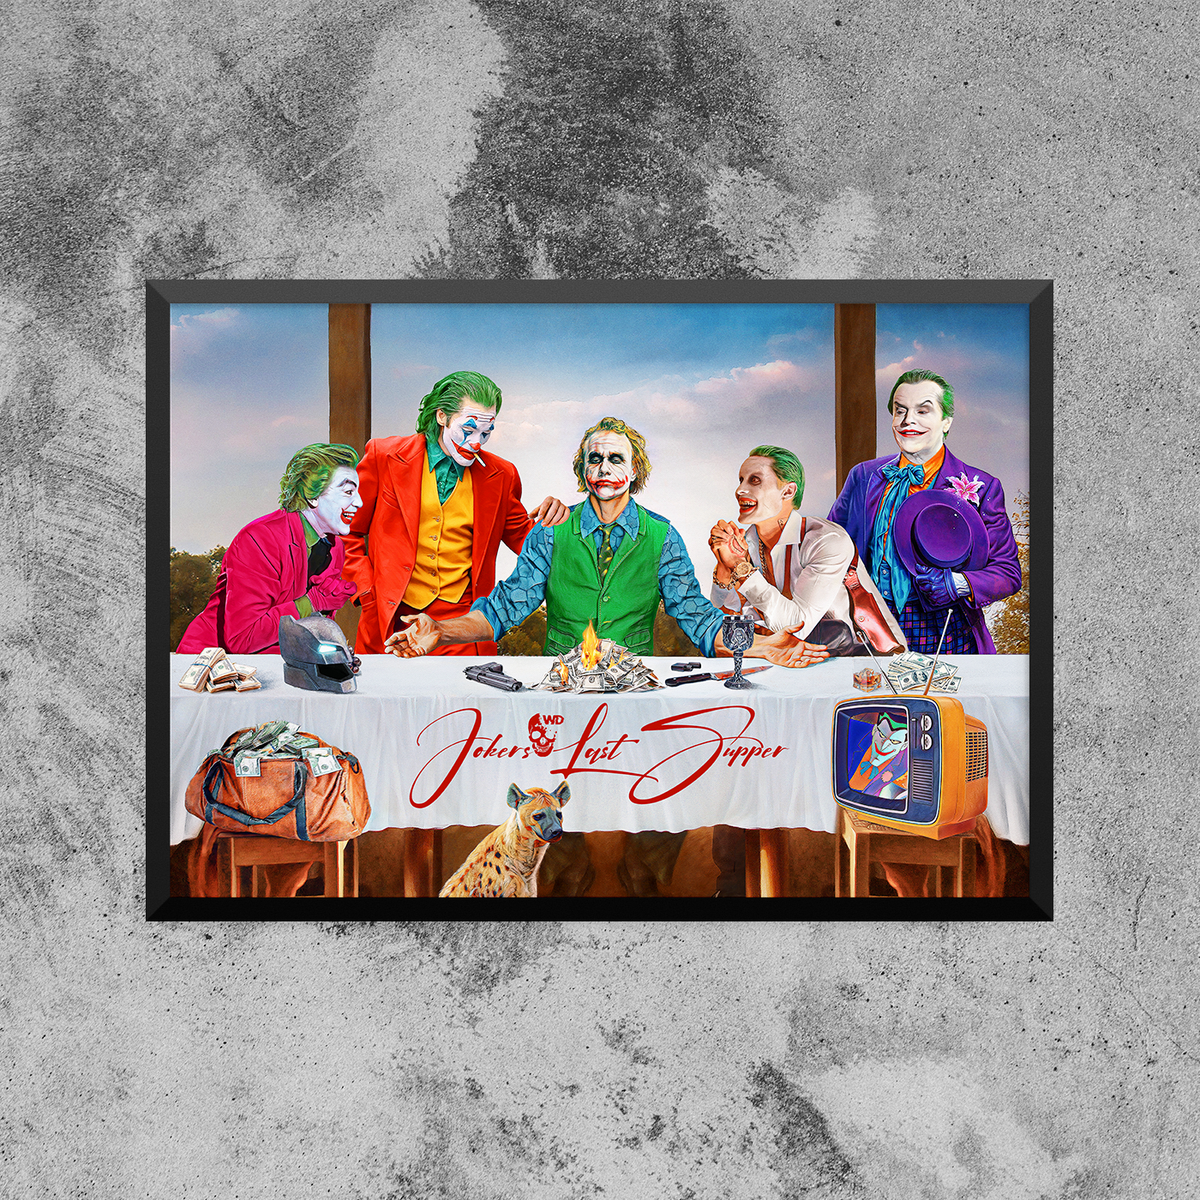 Jokers Last Supper!